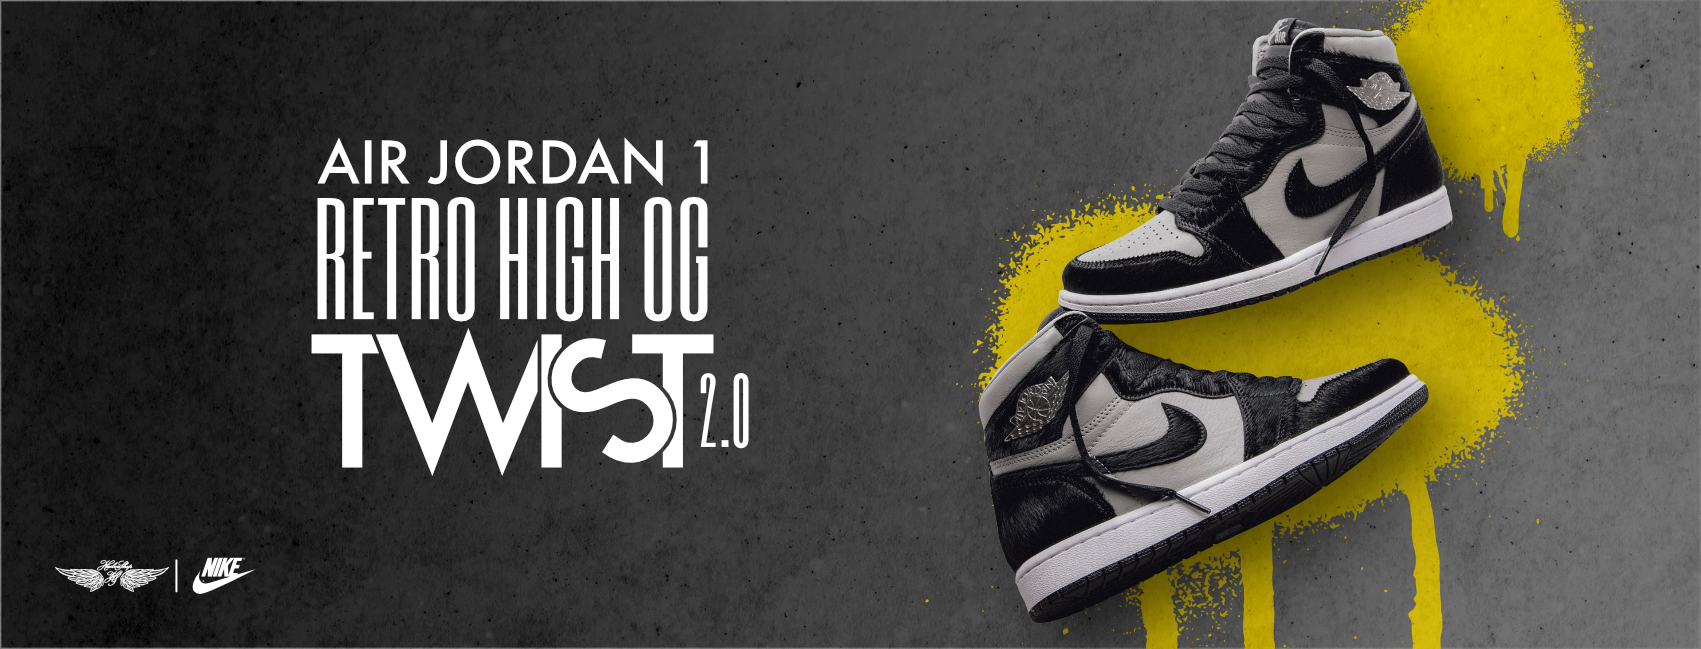 Air Jordan 1 Retro High OG «Twist 2.0»